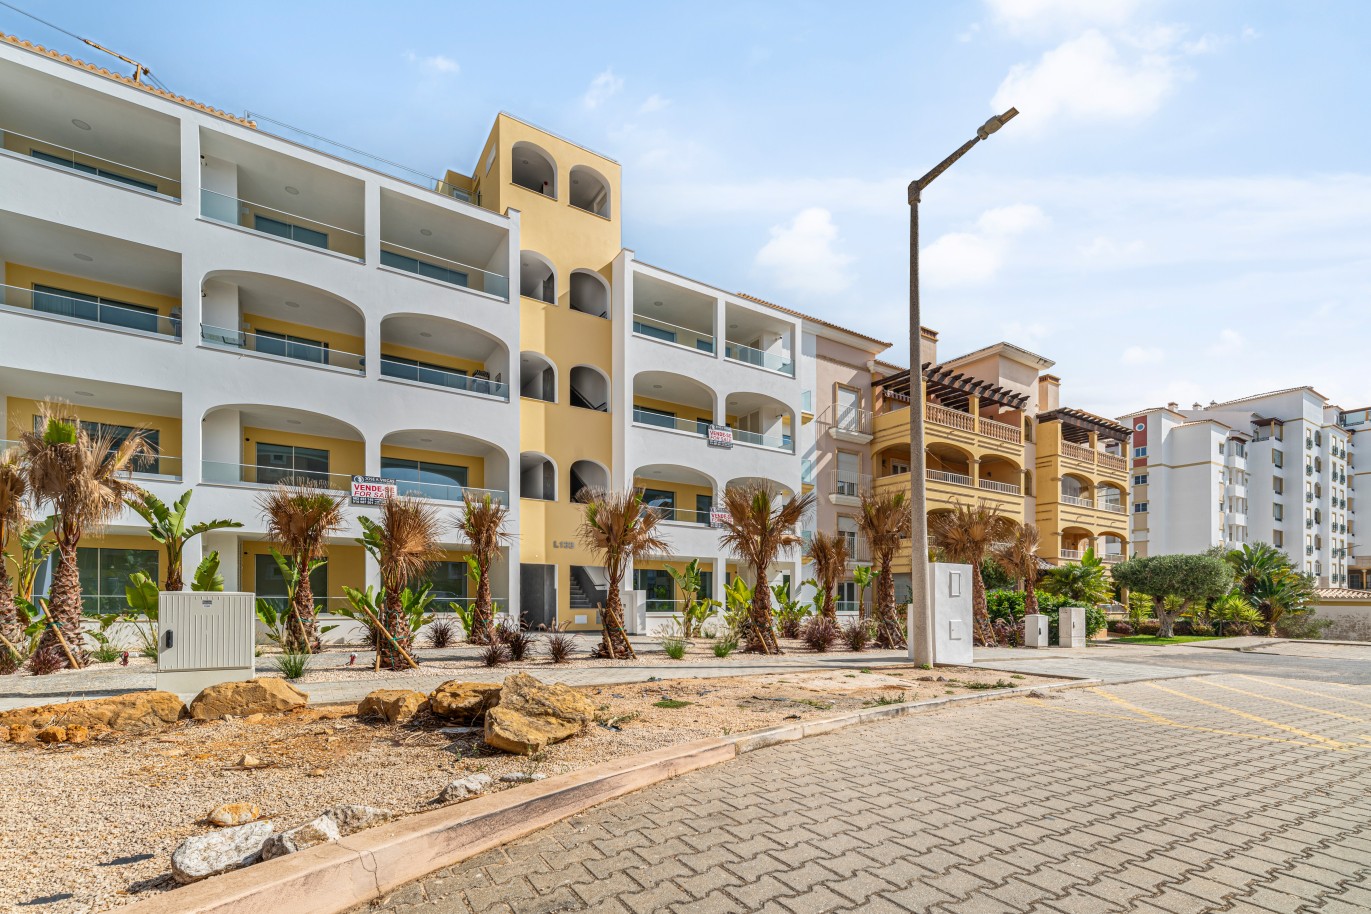 Verkauf einer Wohnung im Bau, mit Terrasse, Lagos, Algarve, Portugal_238384